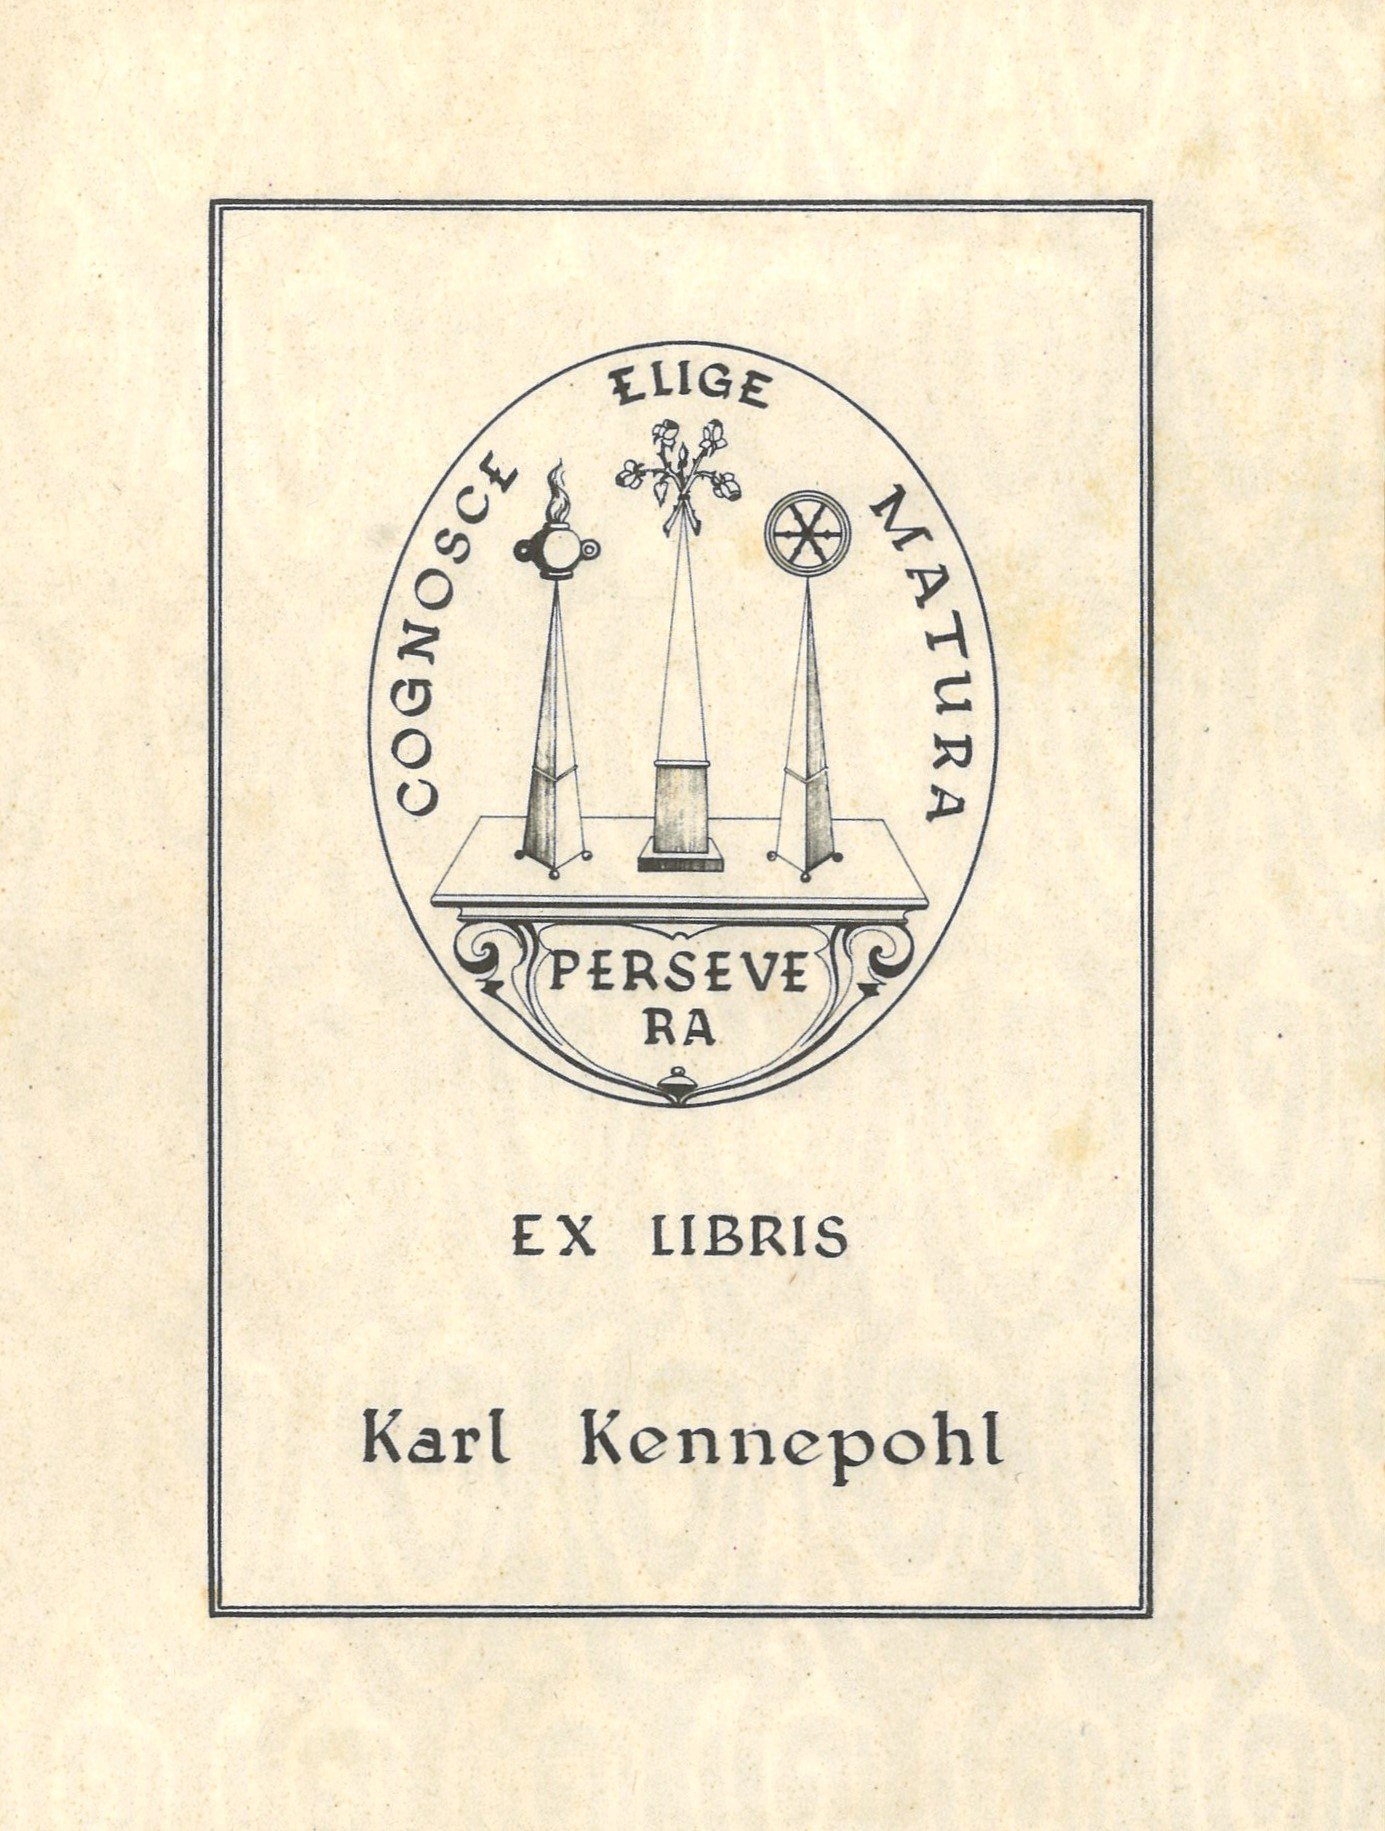 Exlibris Karl Kennepohl (Landesgeschichtliche Vereinigung für die Mark Brandenburg e.V. CC BY)